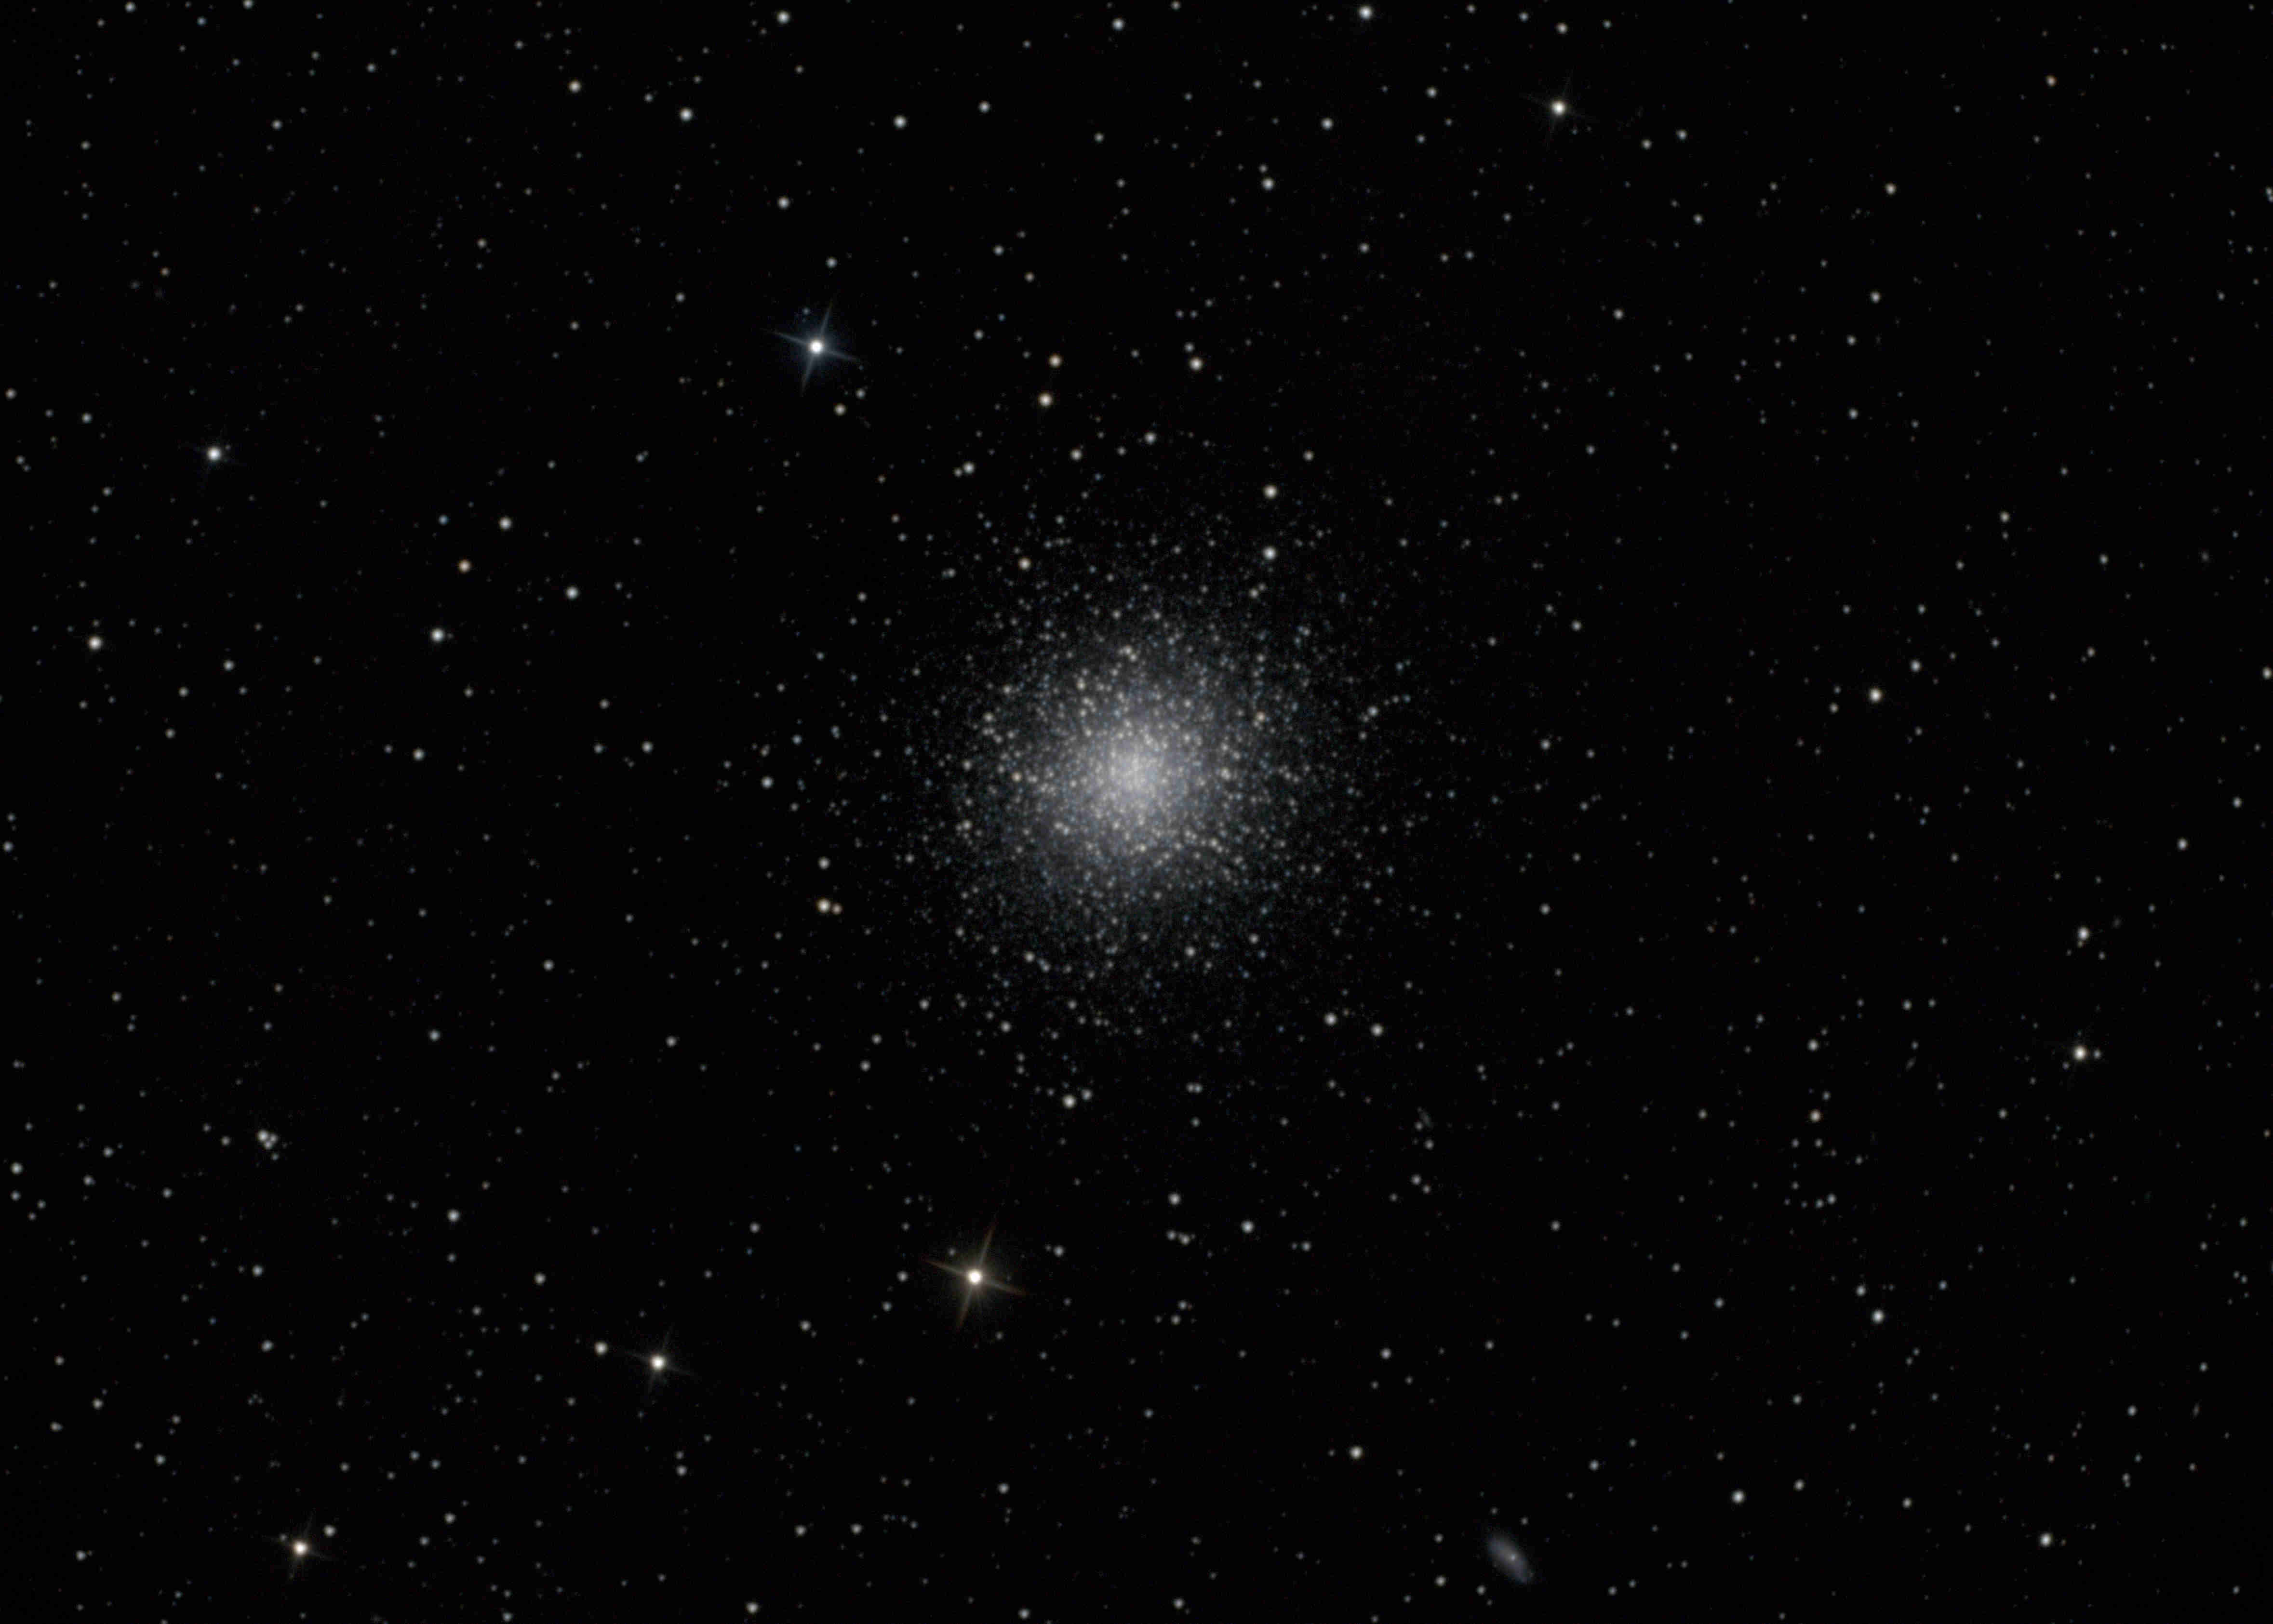 Messier 13 